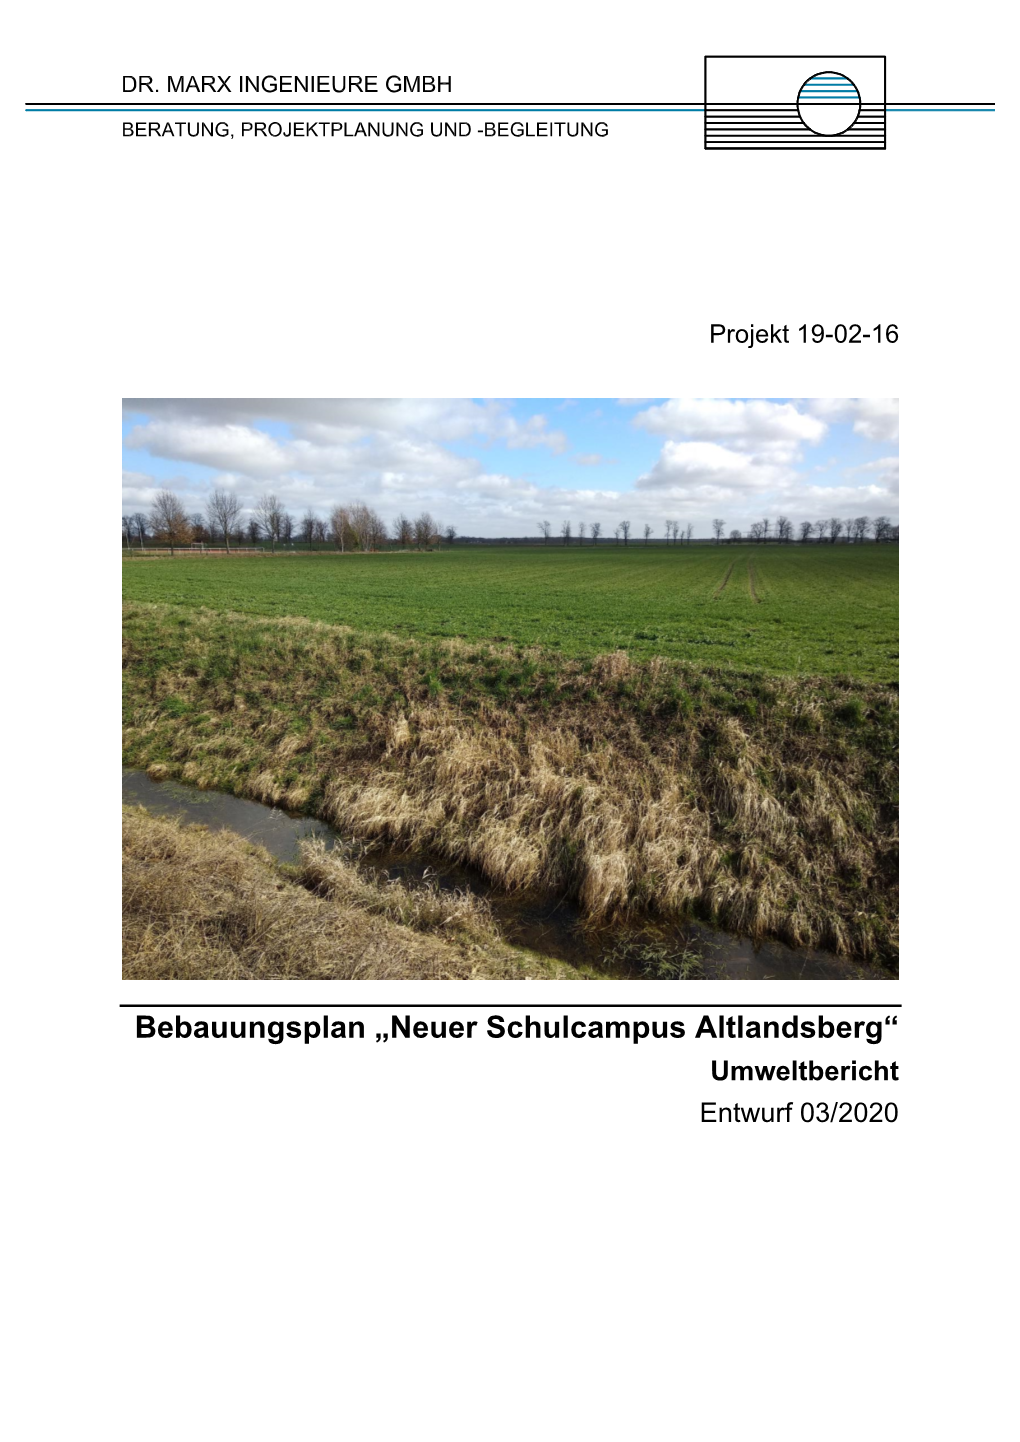 Bebauungsplan „Neuer Schulcampus Altlandsberg“ Umweltbericht Entwurf 03/2020